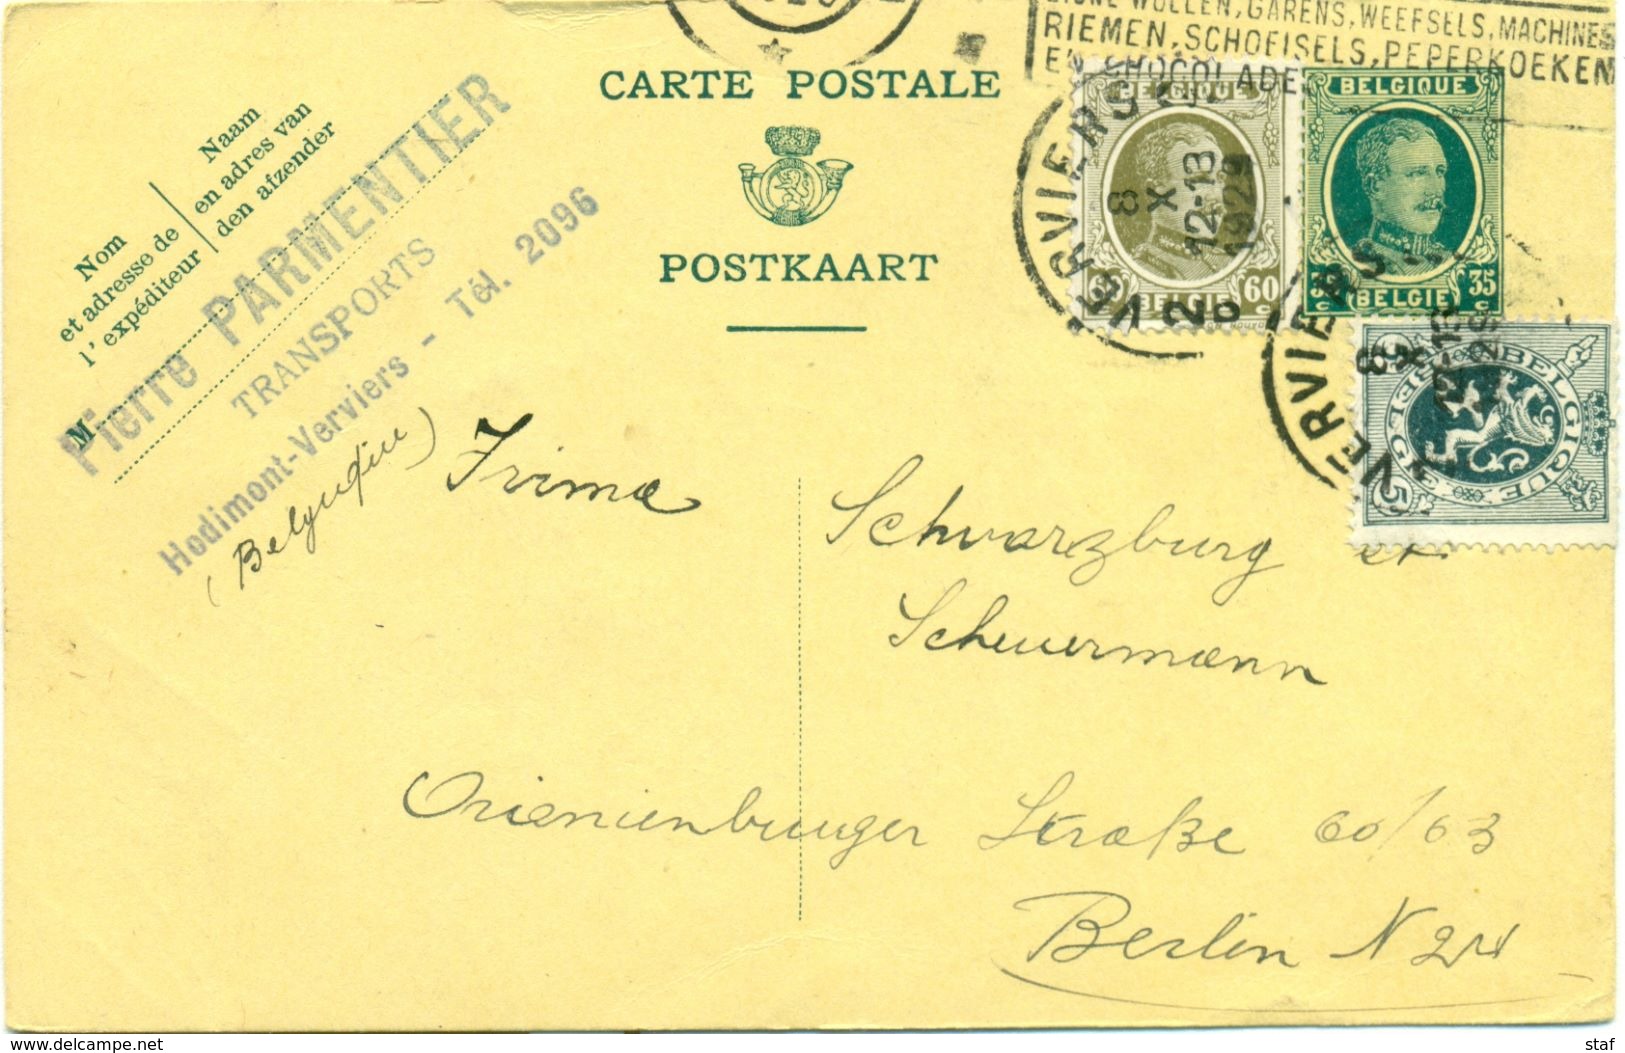 Carte Postale De Pierre Parmentier Transports à Hodimont - Verviers : 1929 - Transports